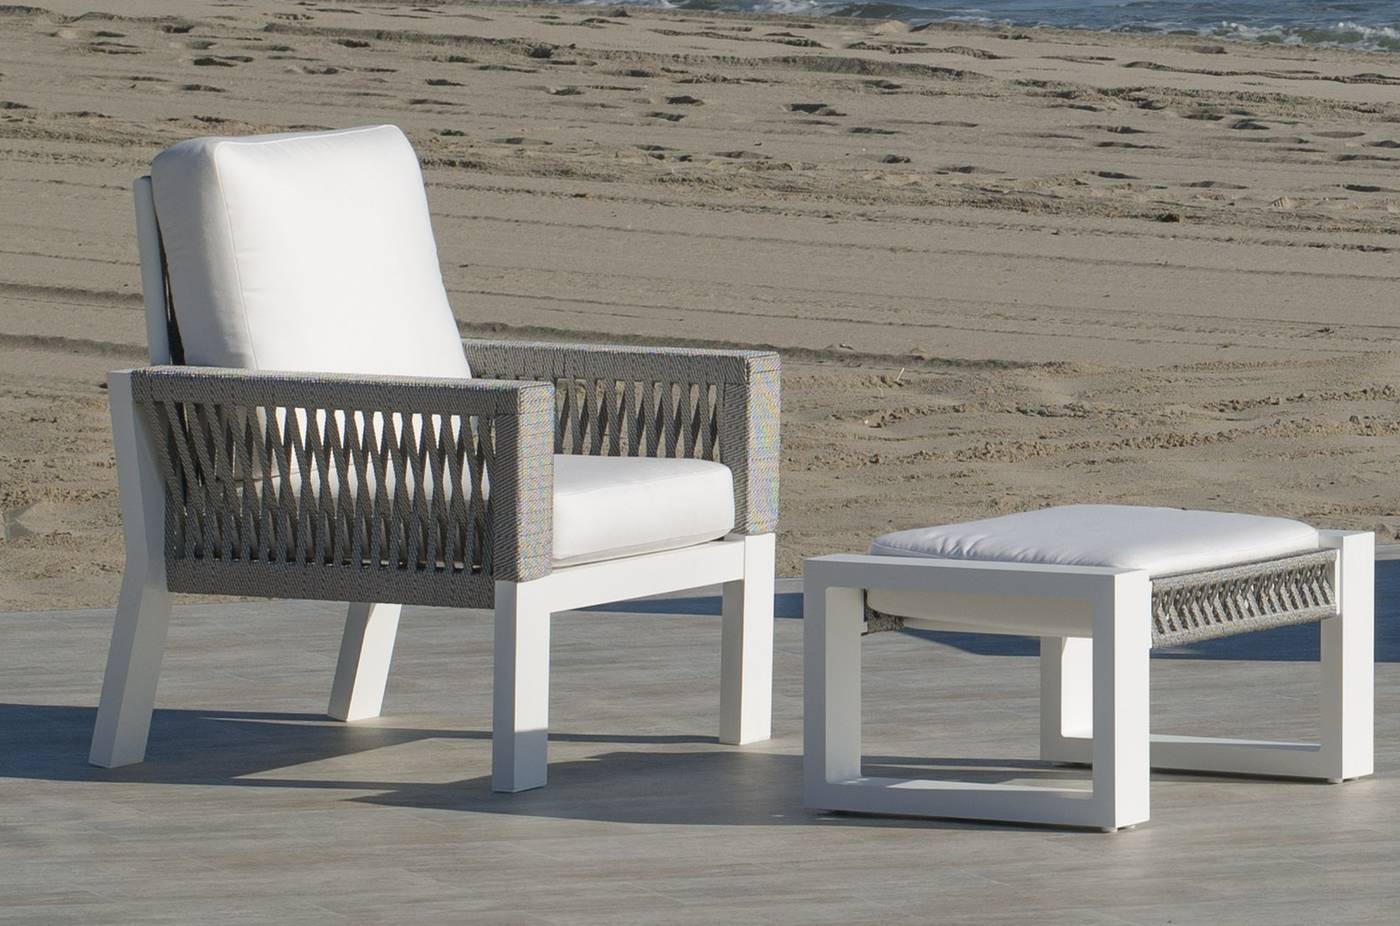 Set Aluminio Estambul-8 - Conjunto aluminio: 1 sofá de 3 plazas + 2 sillones + 1 mesa de centro + cojines. Disponible en color blanco, gris, marrón o champagne.